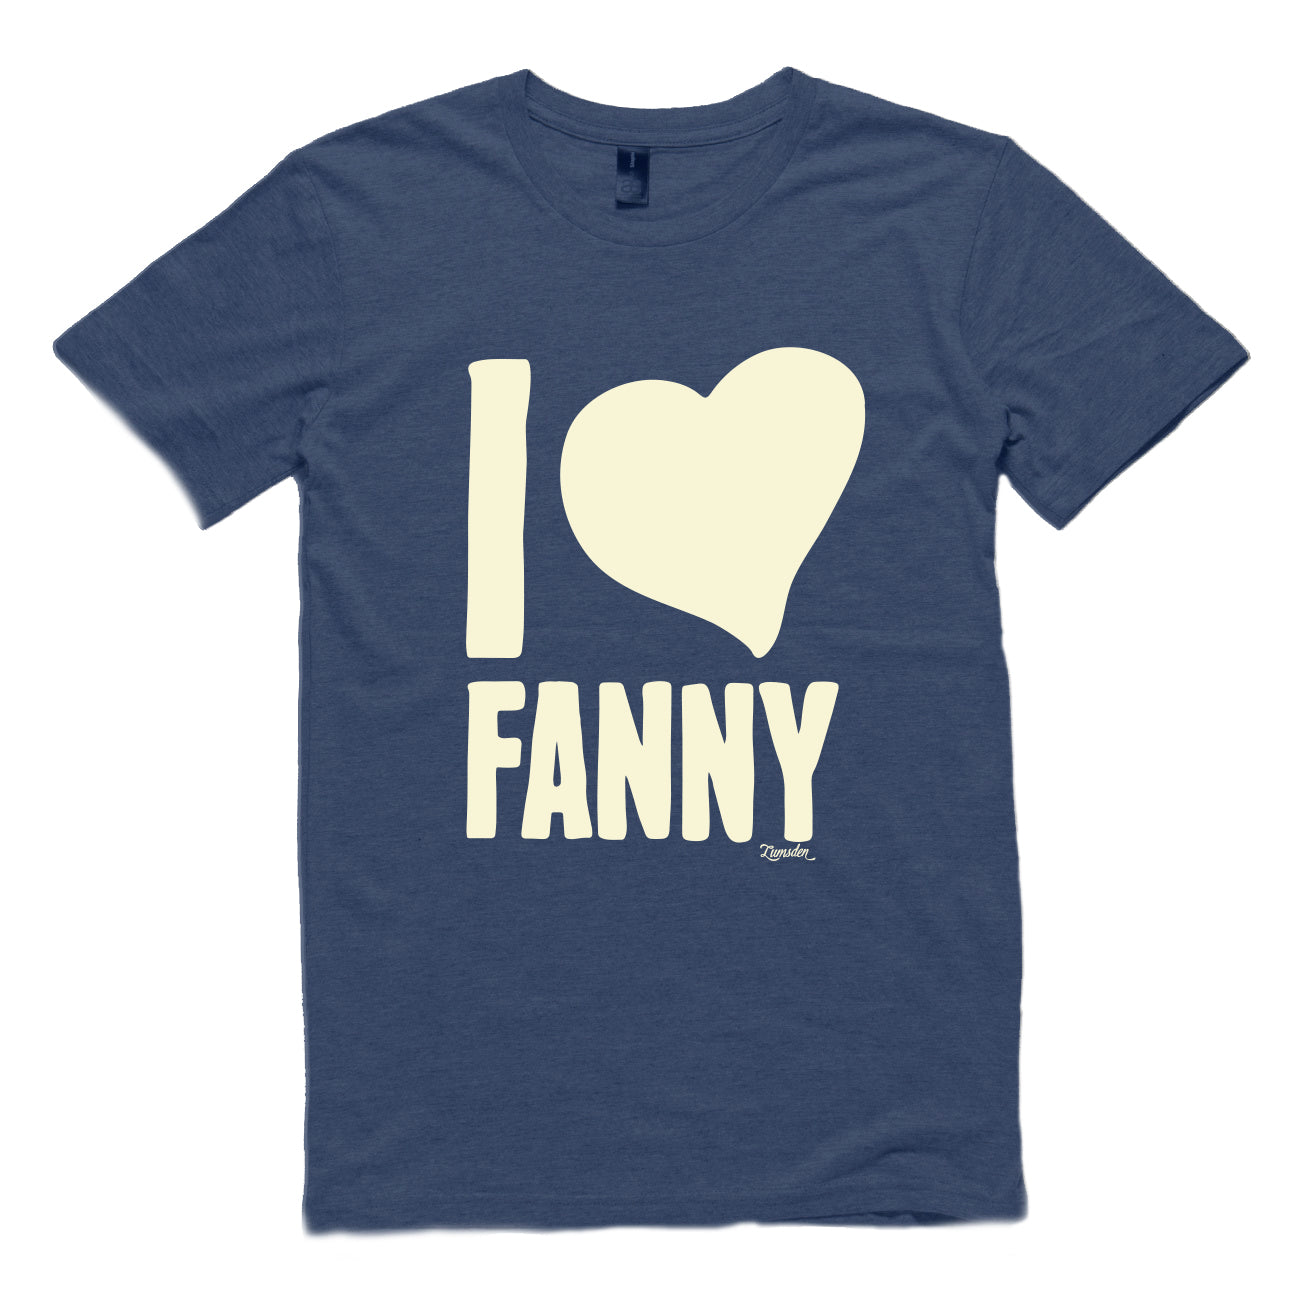 'I LOVE FANNY' Navy Marle Tee